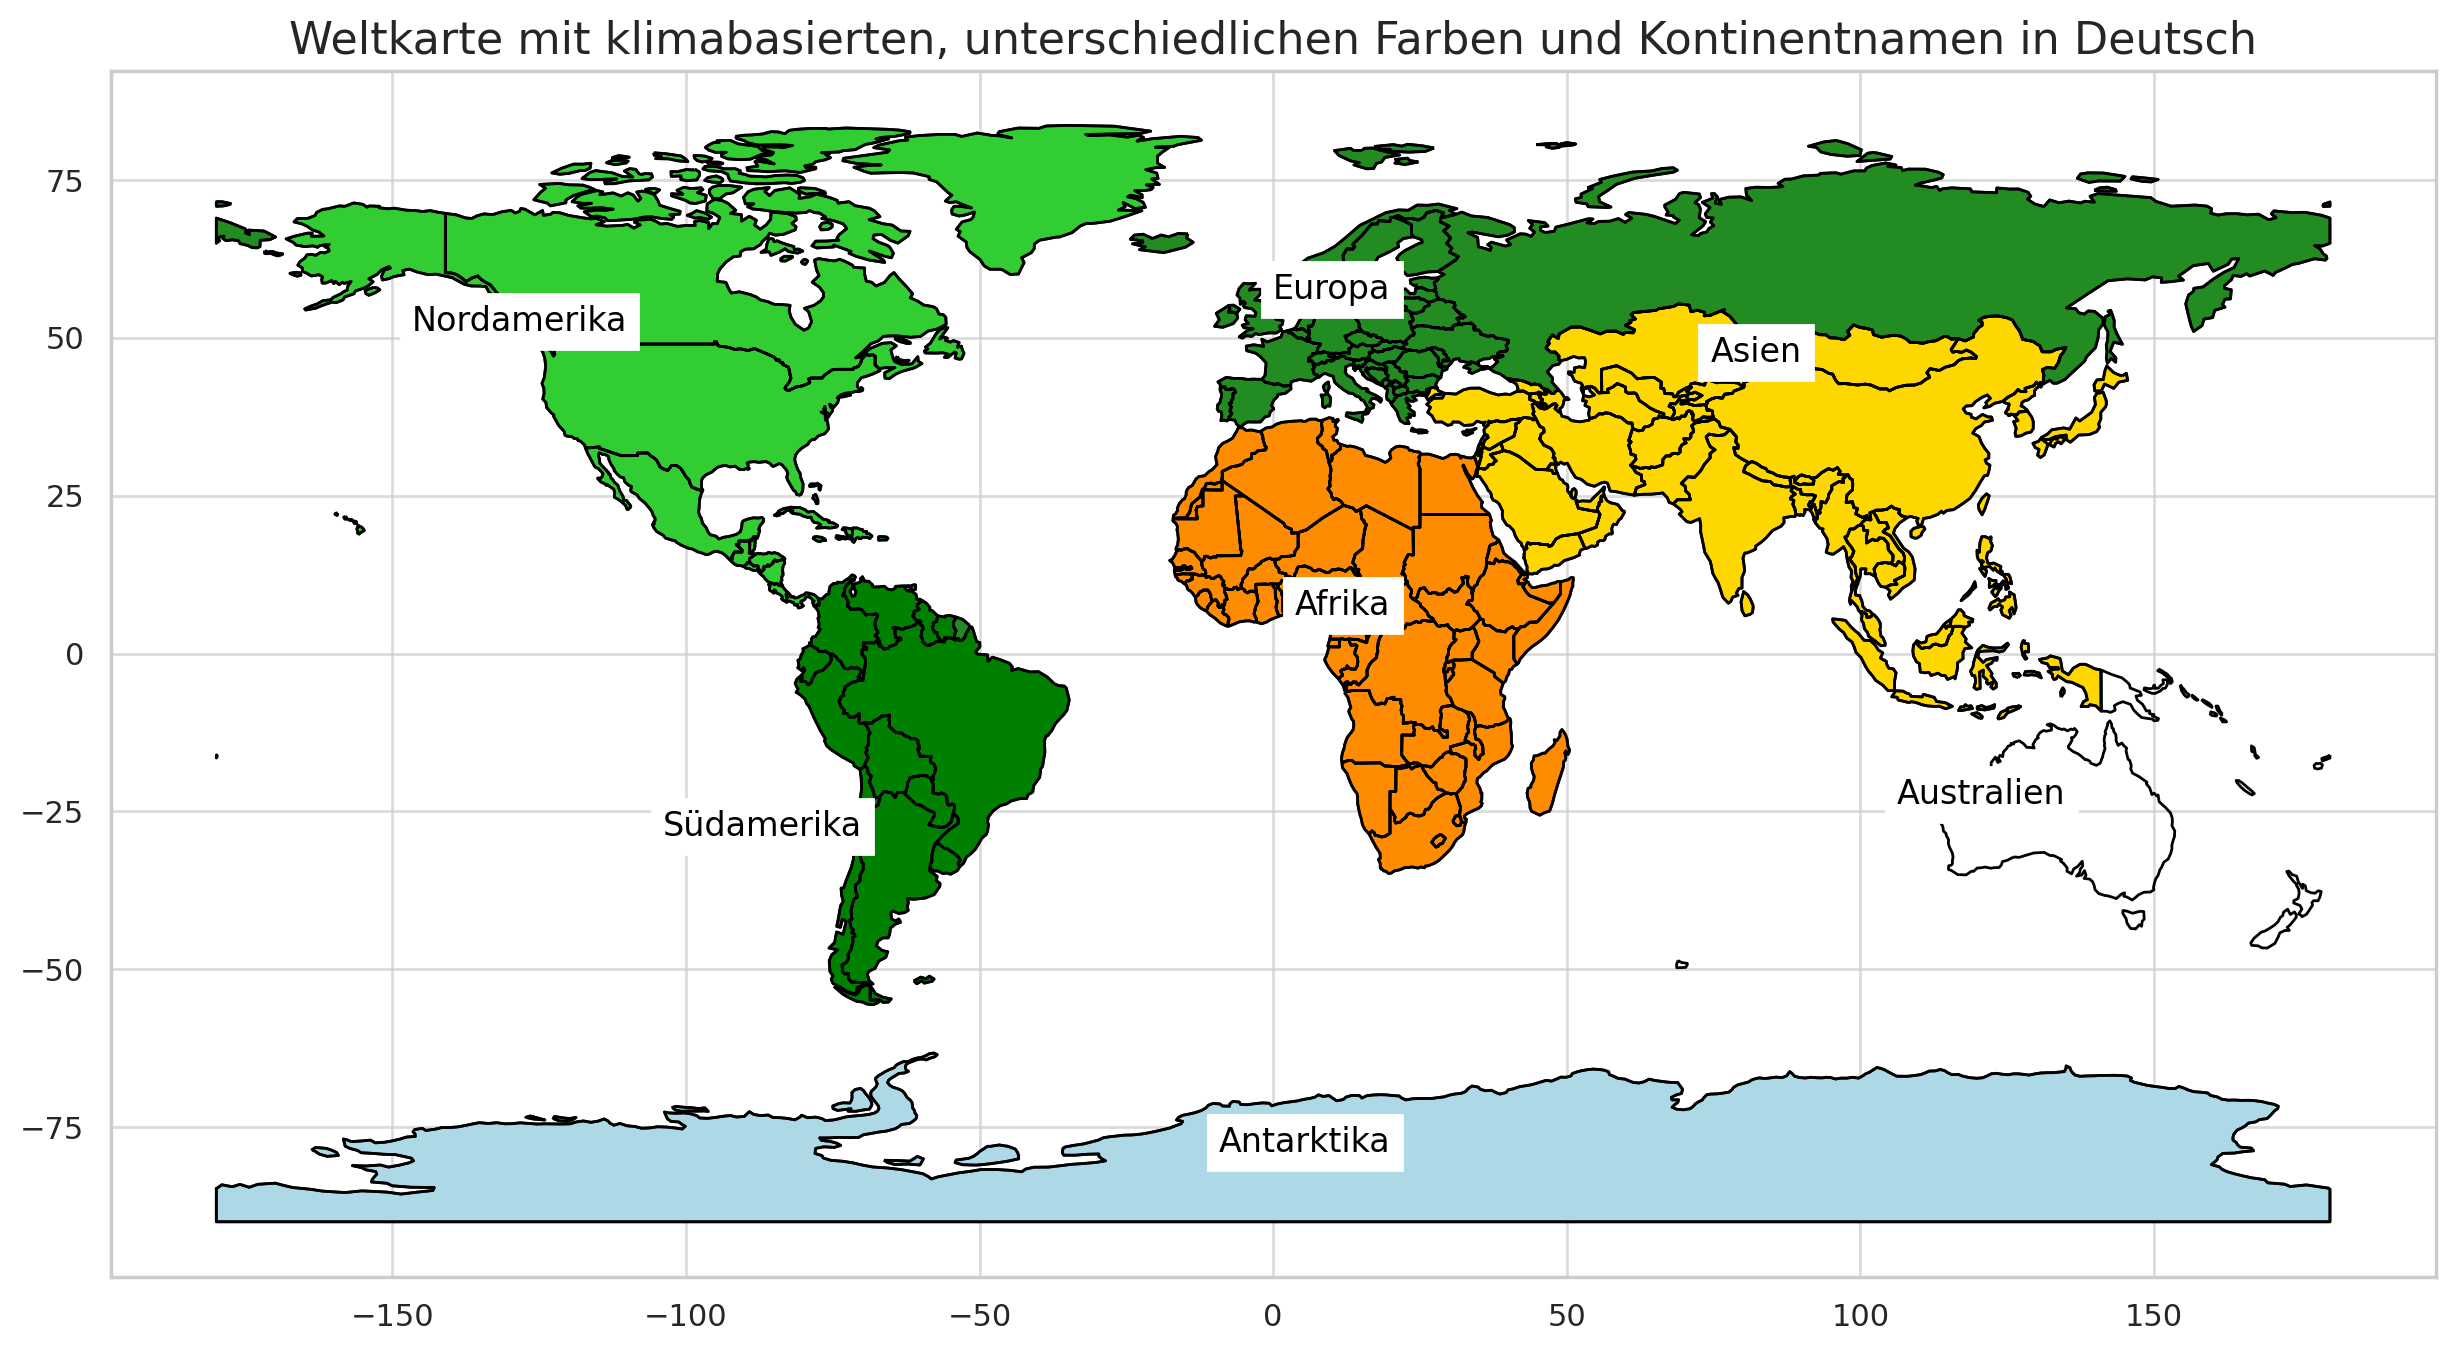 Klimabasierte_Weltkarte_mit_unterschiedlichen_Farben_und_deutschen_Kontinentnamen